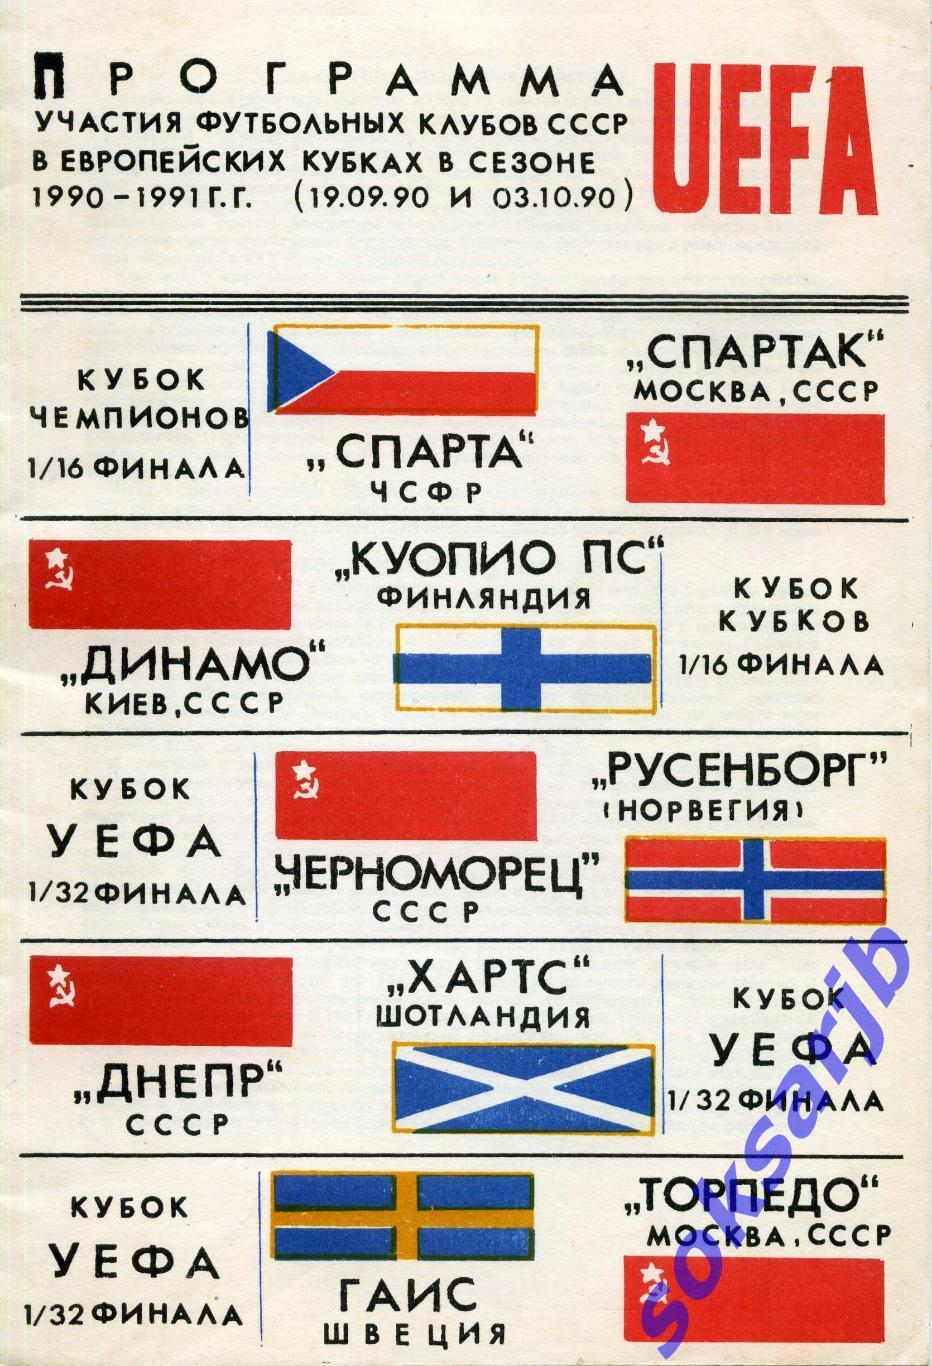 Программа участия футбольных клубов СССР в европейских кубках 1990-1991 г.г.